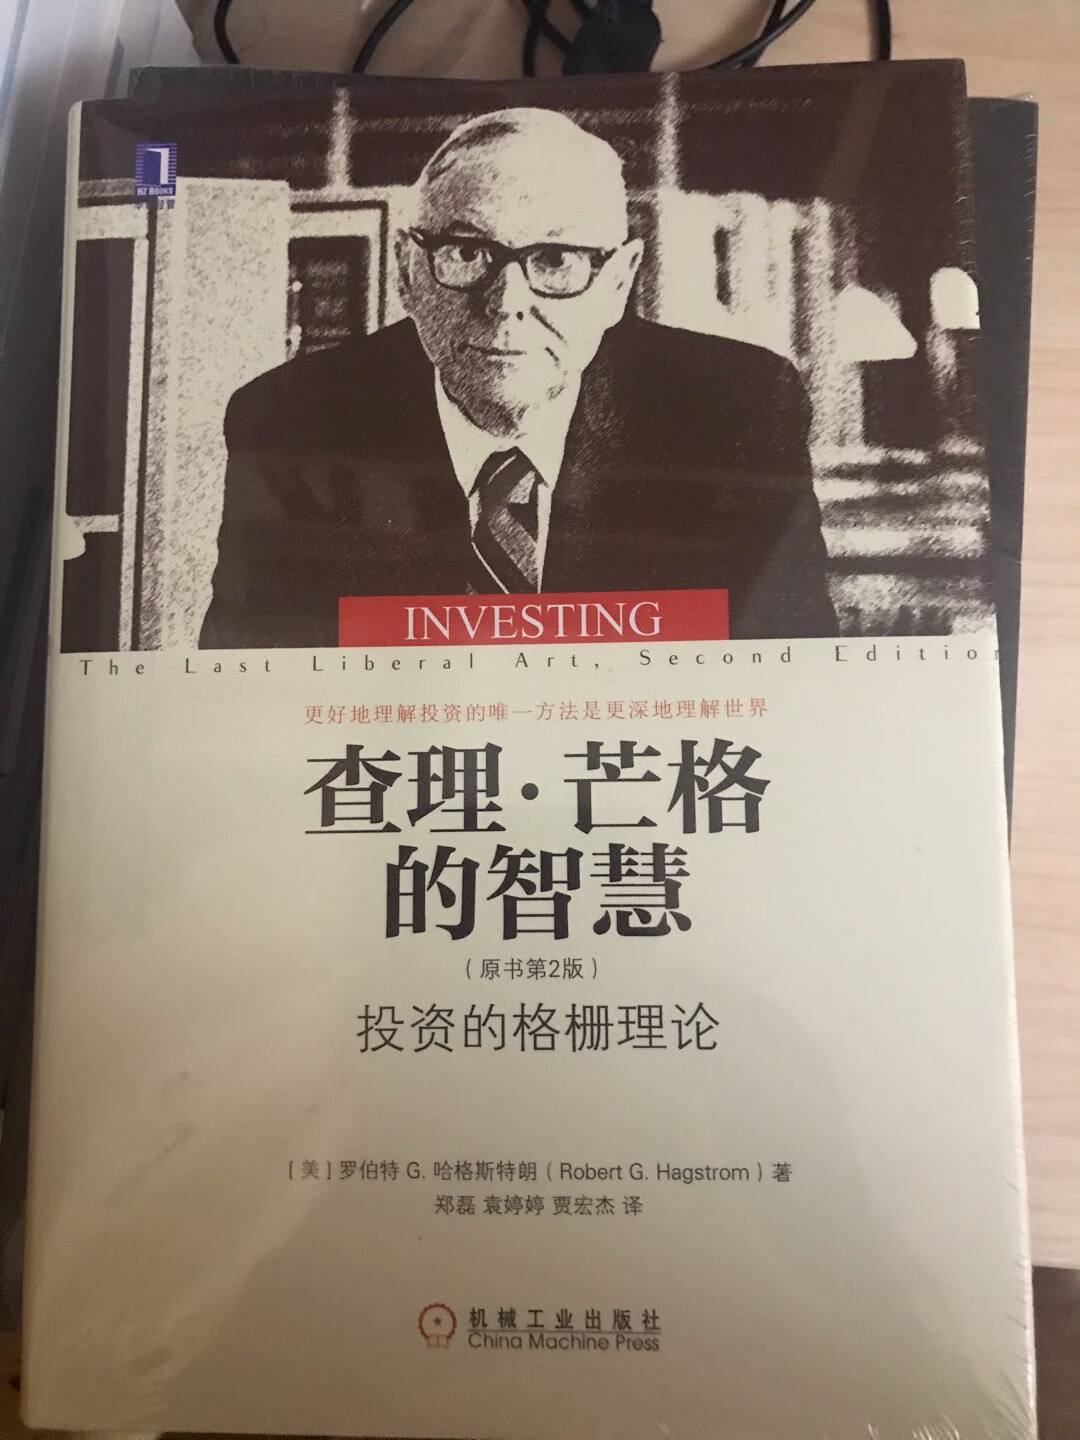 查理·芒格是一个完全凭借智慧取得成功的人，这对于中国的读书人来讲无疑是一个令人振奋的例子。与我们在社会上所看到的权钱交易、潜规则、商业欺诈、造假等手段不同，他用最干净的方法，取得了商业的巨大成功。